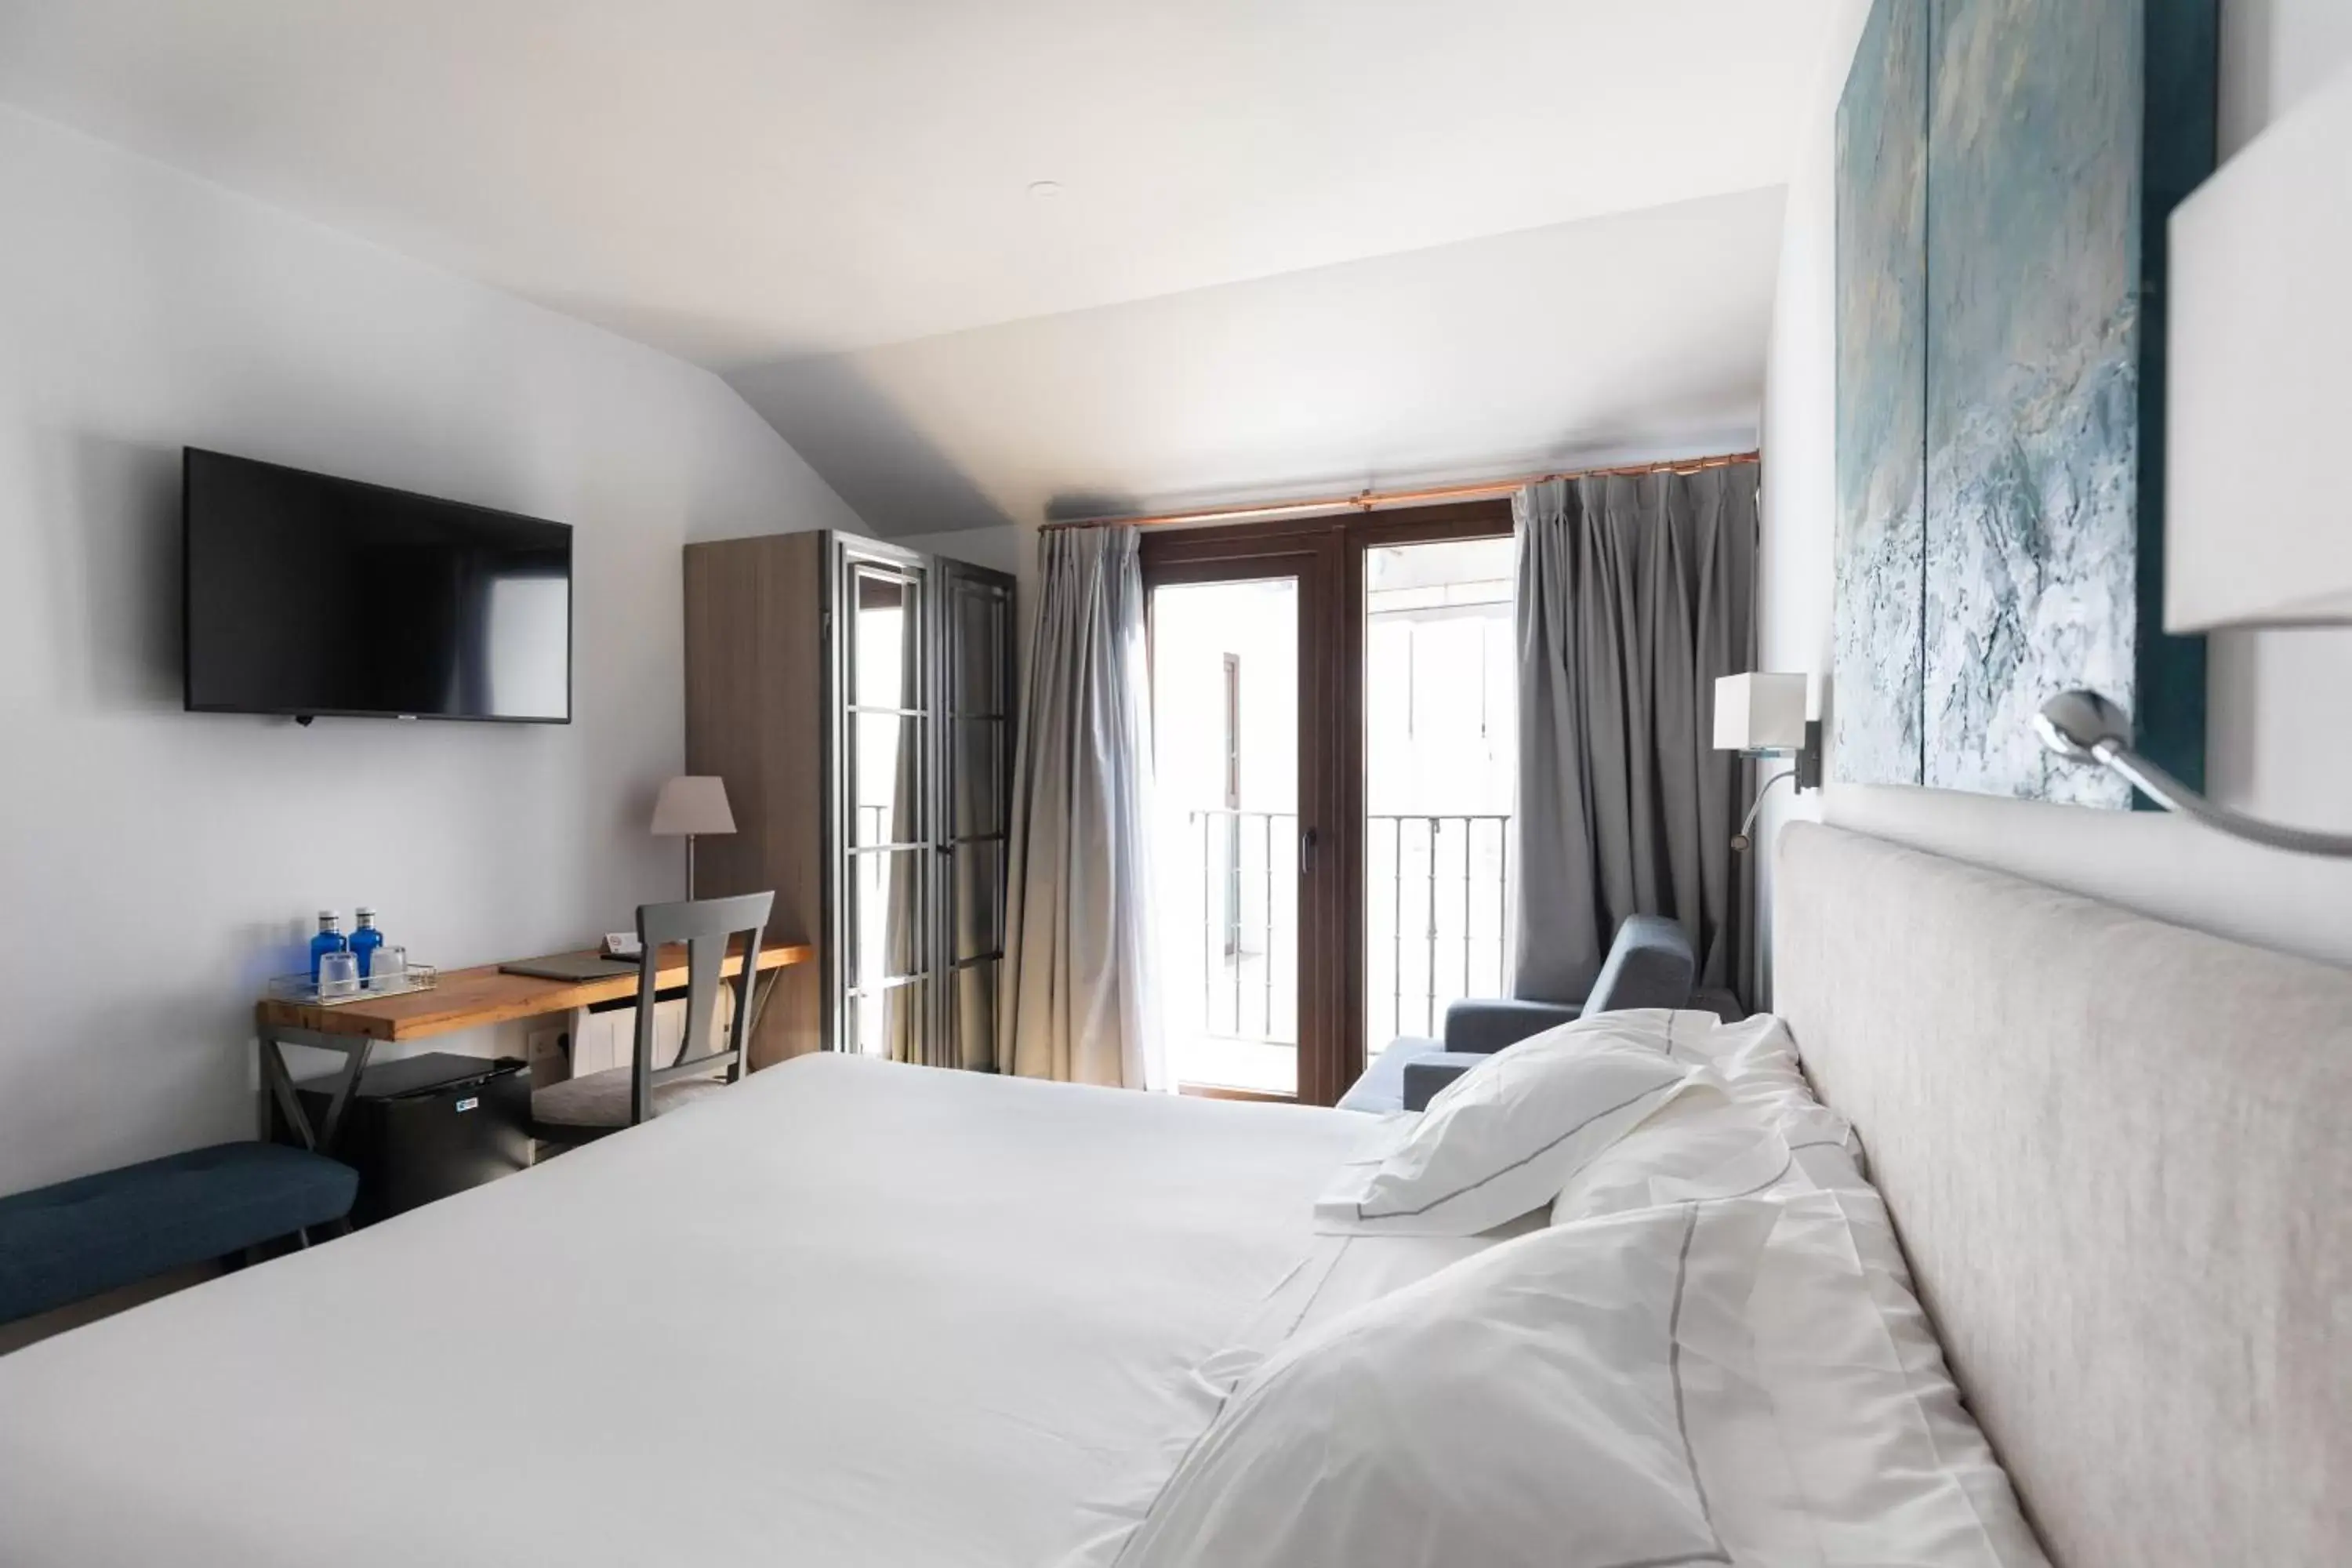 TV and multimedia, Bed in Hospedium Hotel Posada de la Silleria